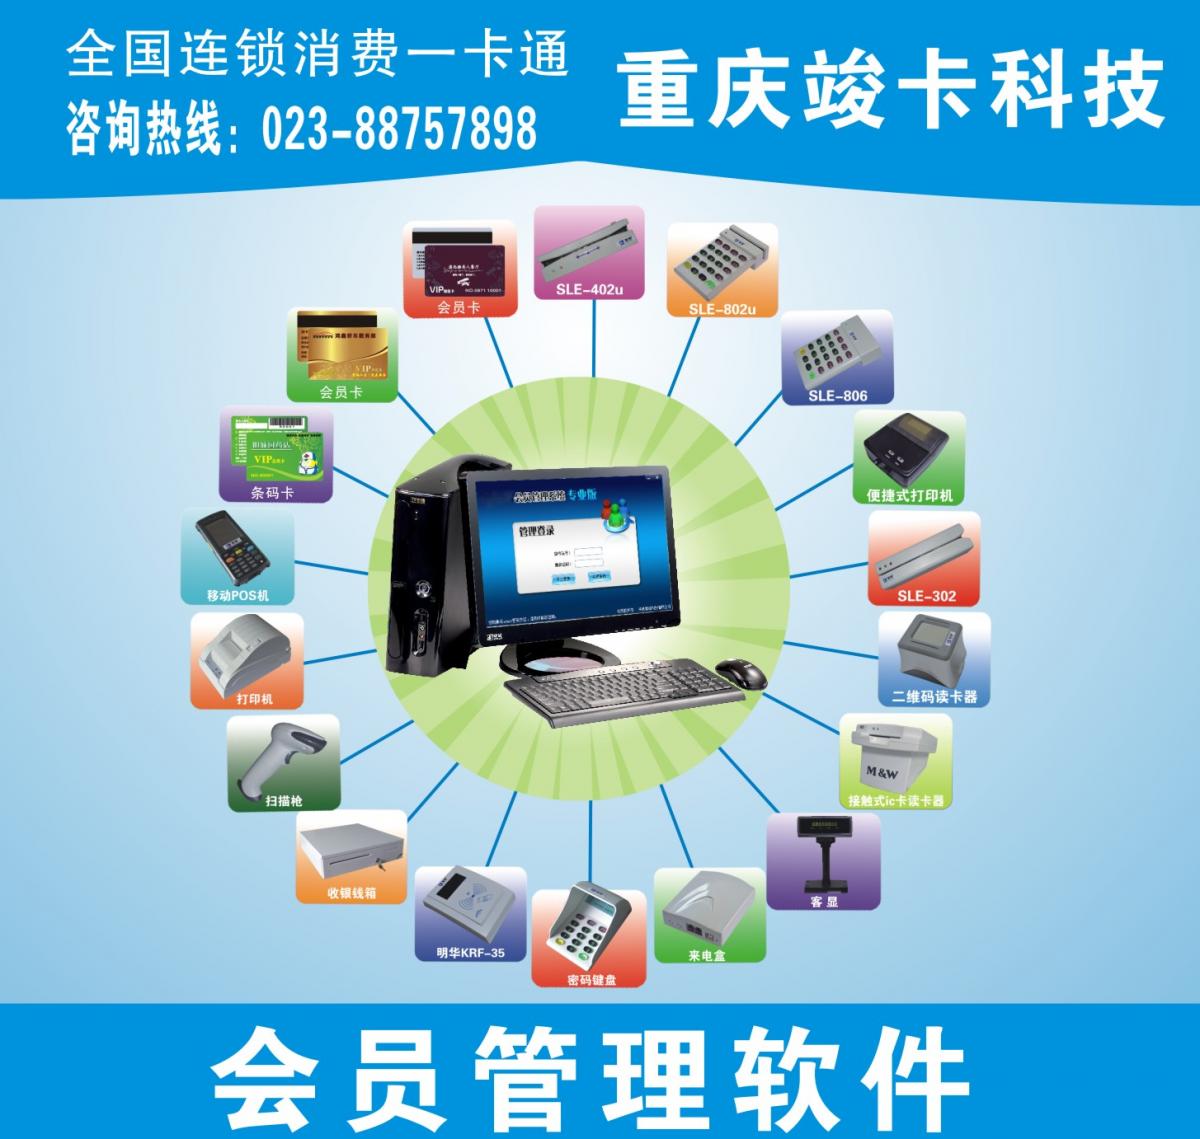 重庆专业制卡、重庆专业会员系统